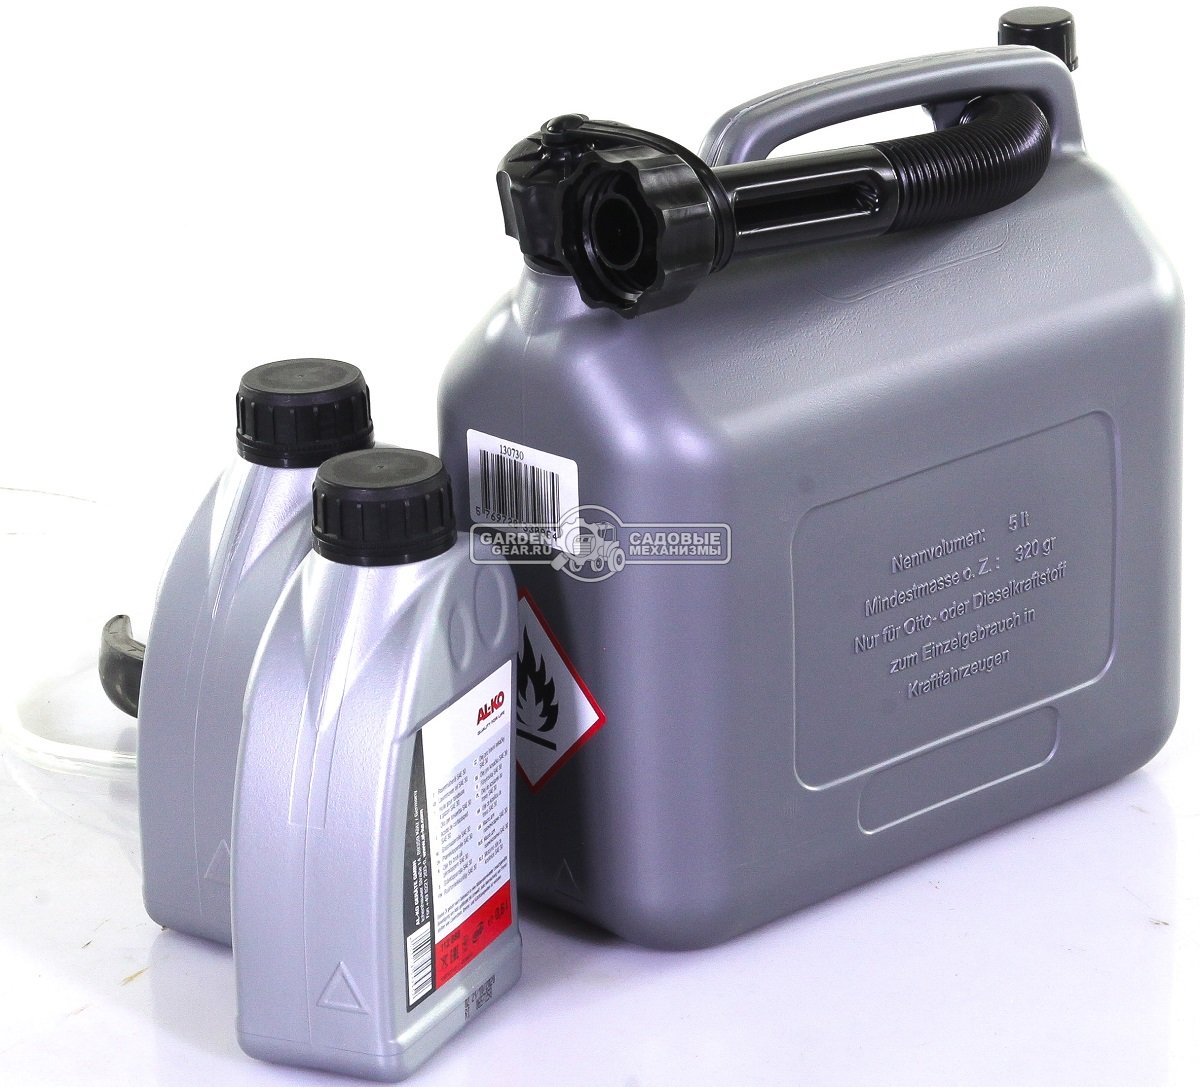 Сервисный набор Al-ko для бензиновых газонокосилок (канистра для топлива 5 л, масло SAE30 0.6 л х 2 шт, шприц для замены масла)